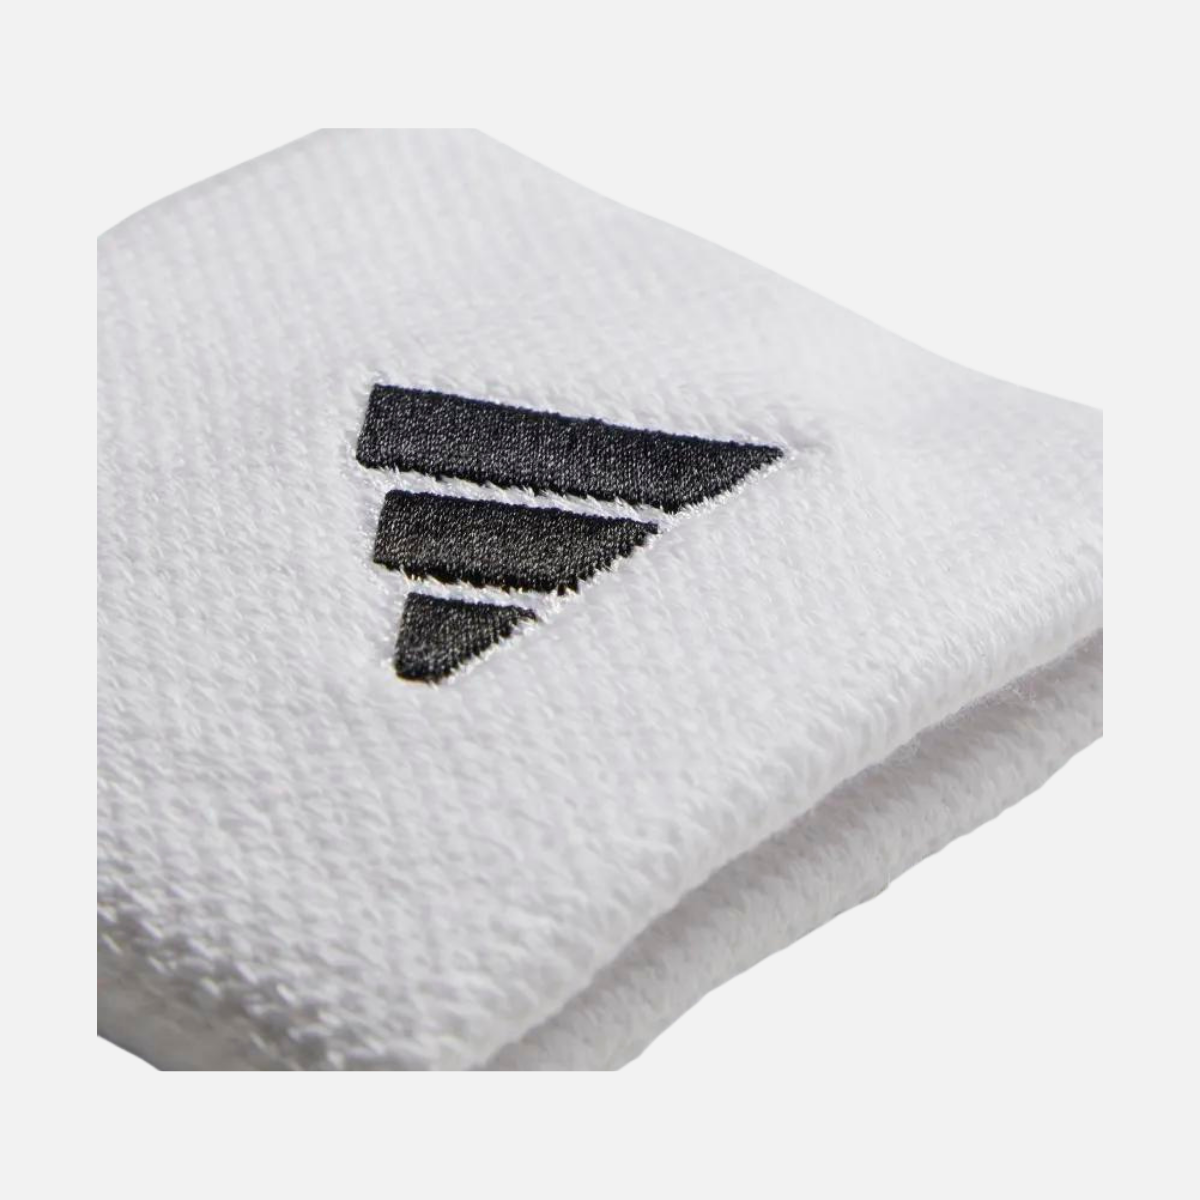 Adidas Tennis Wristband Small -White / White / Black